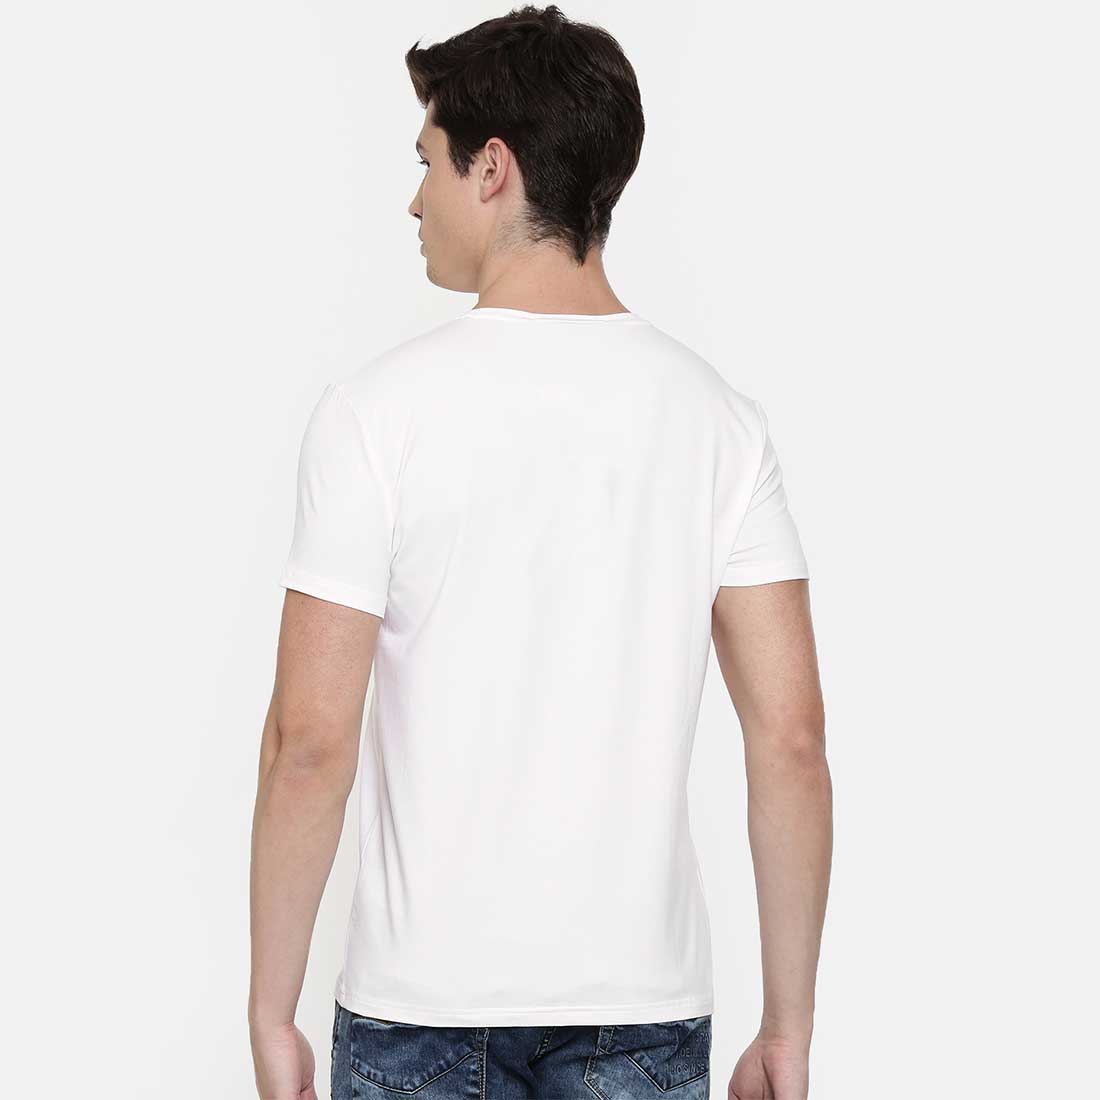 bulk custom tshirts seller in kolkata #color_white